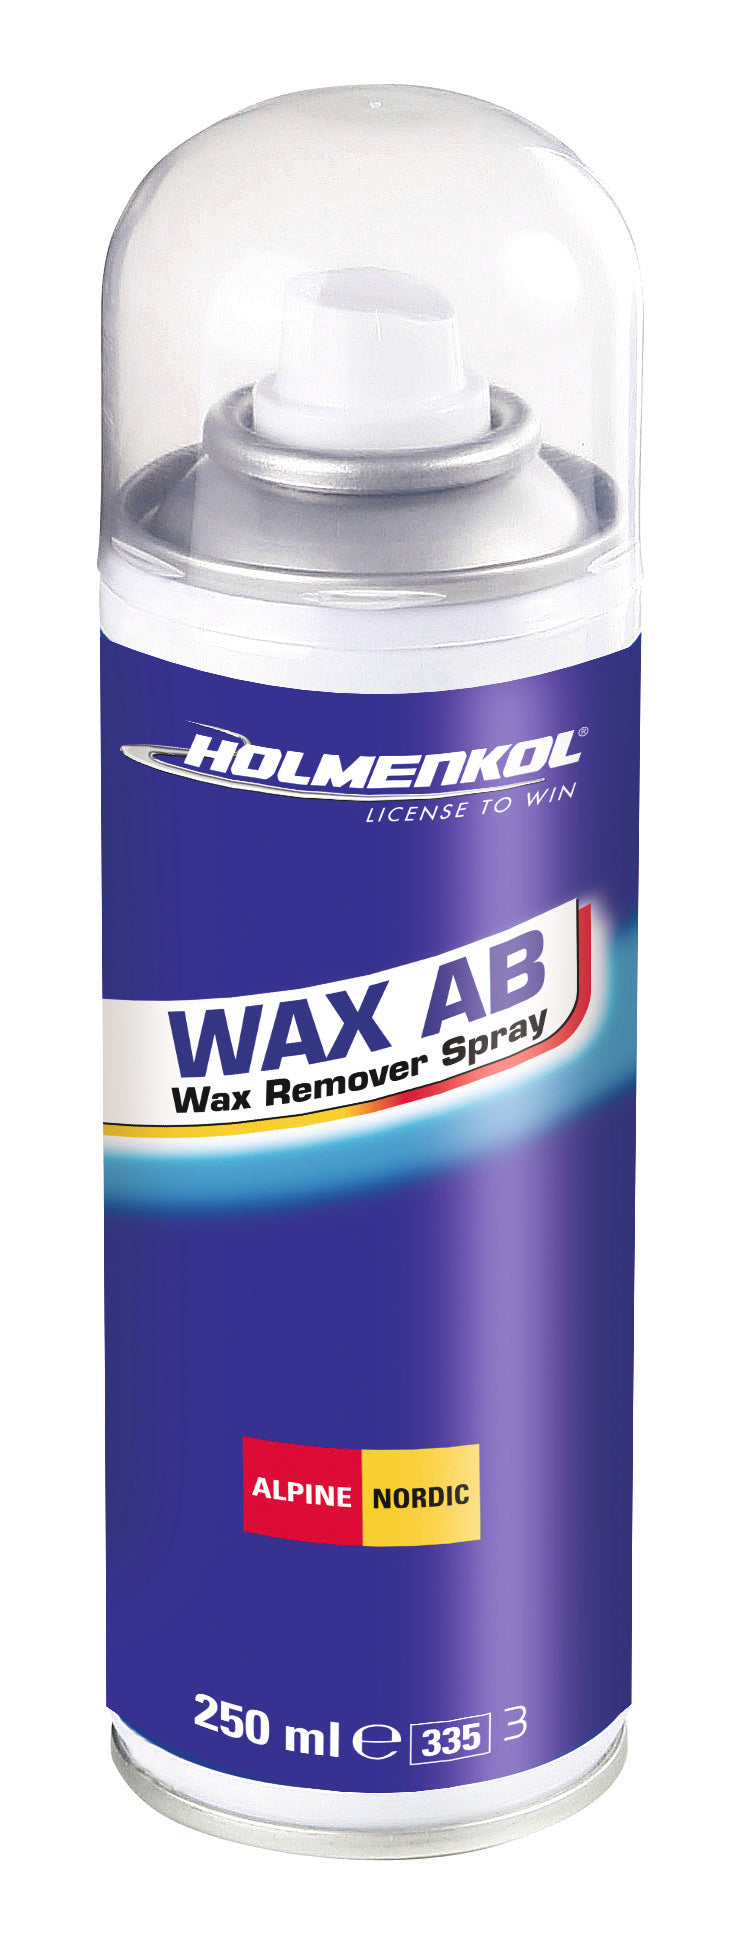 WAXAB Wax Remover Spray - [ka(:)rısma] showroom & concept store